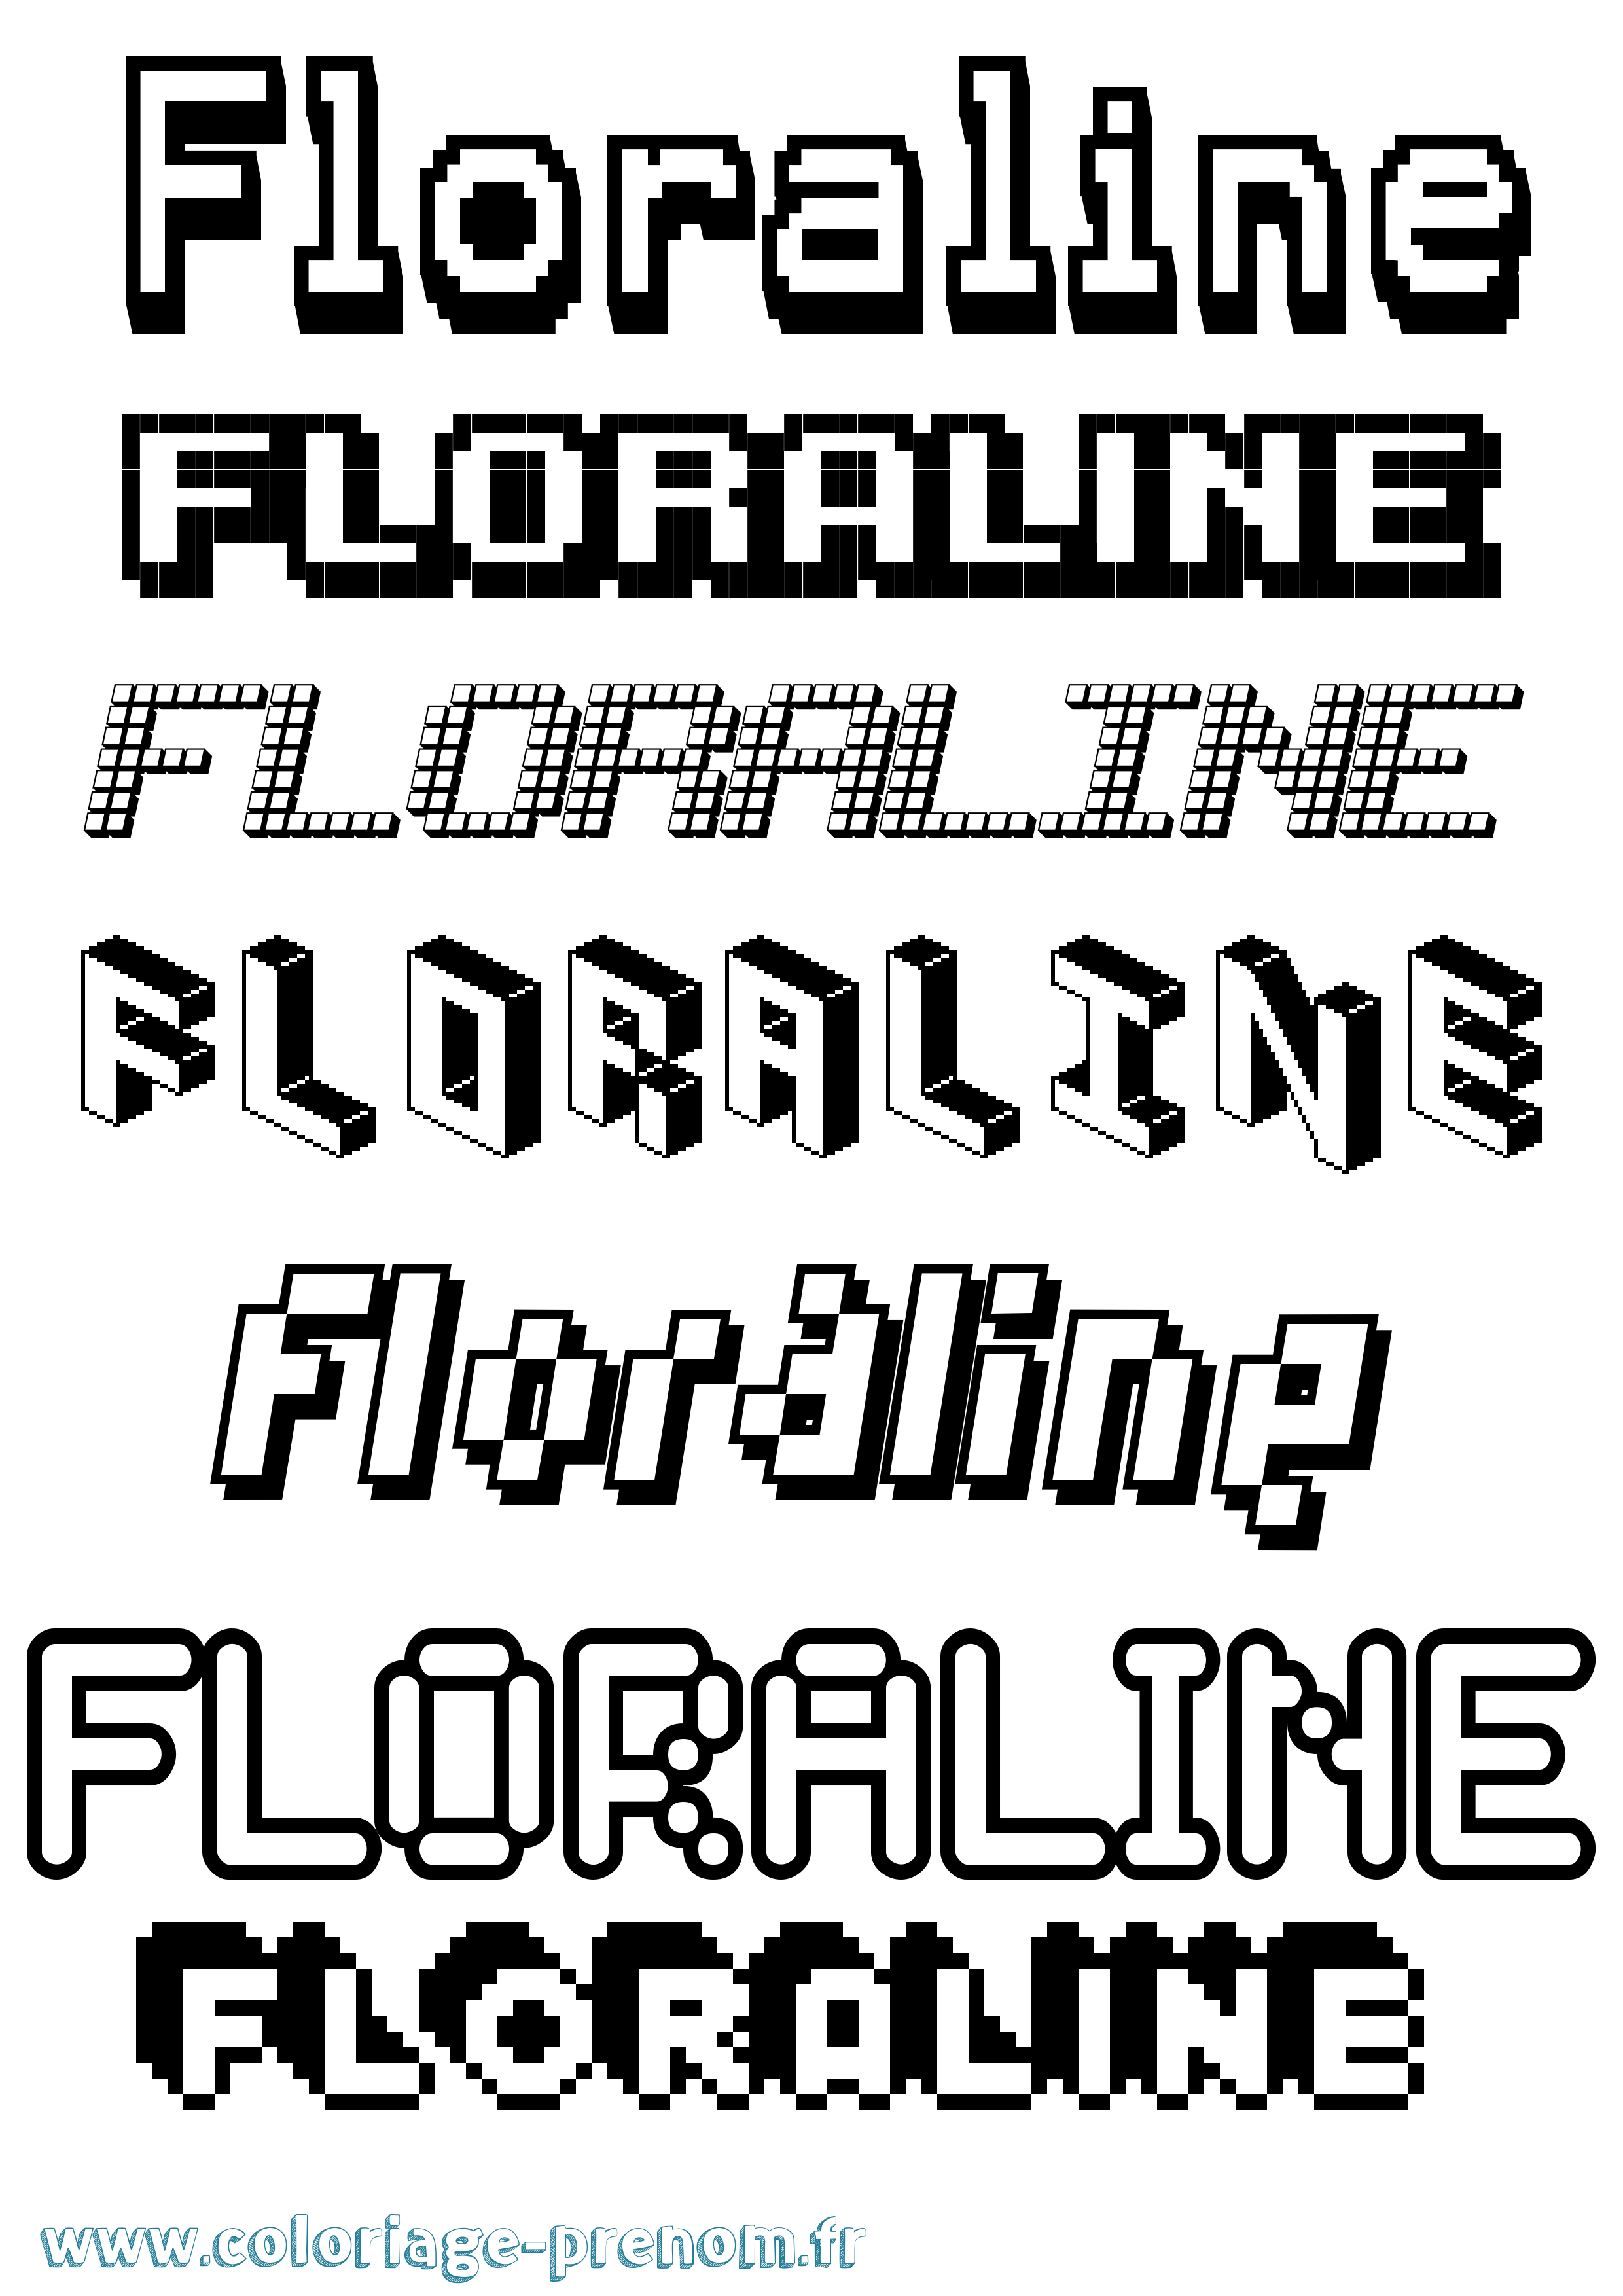 Coloriage prénom Floraline Pixel